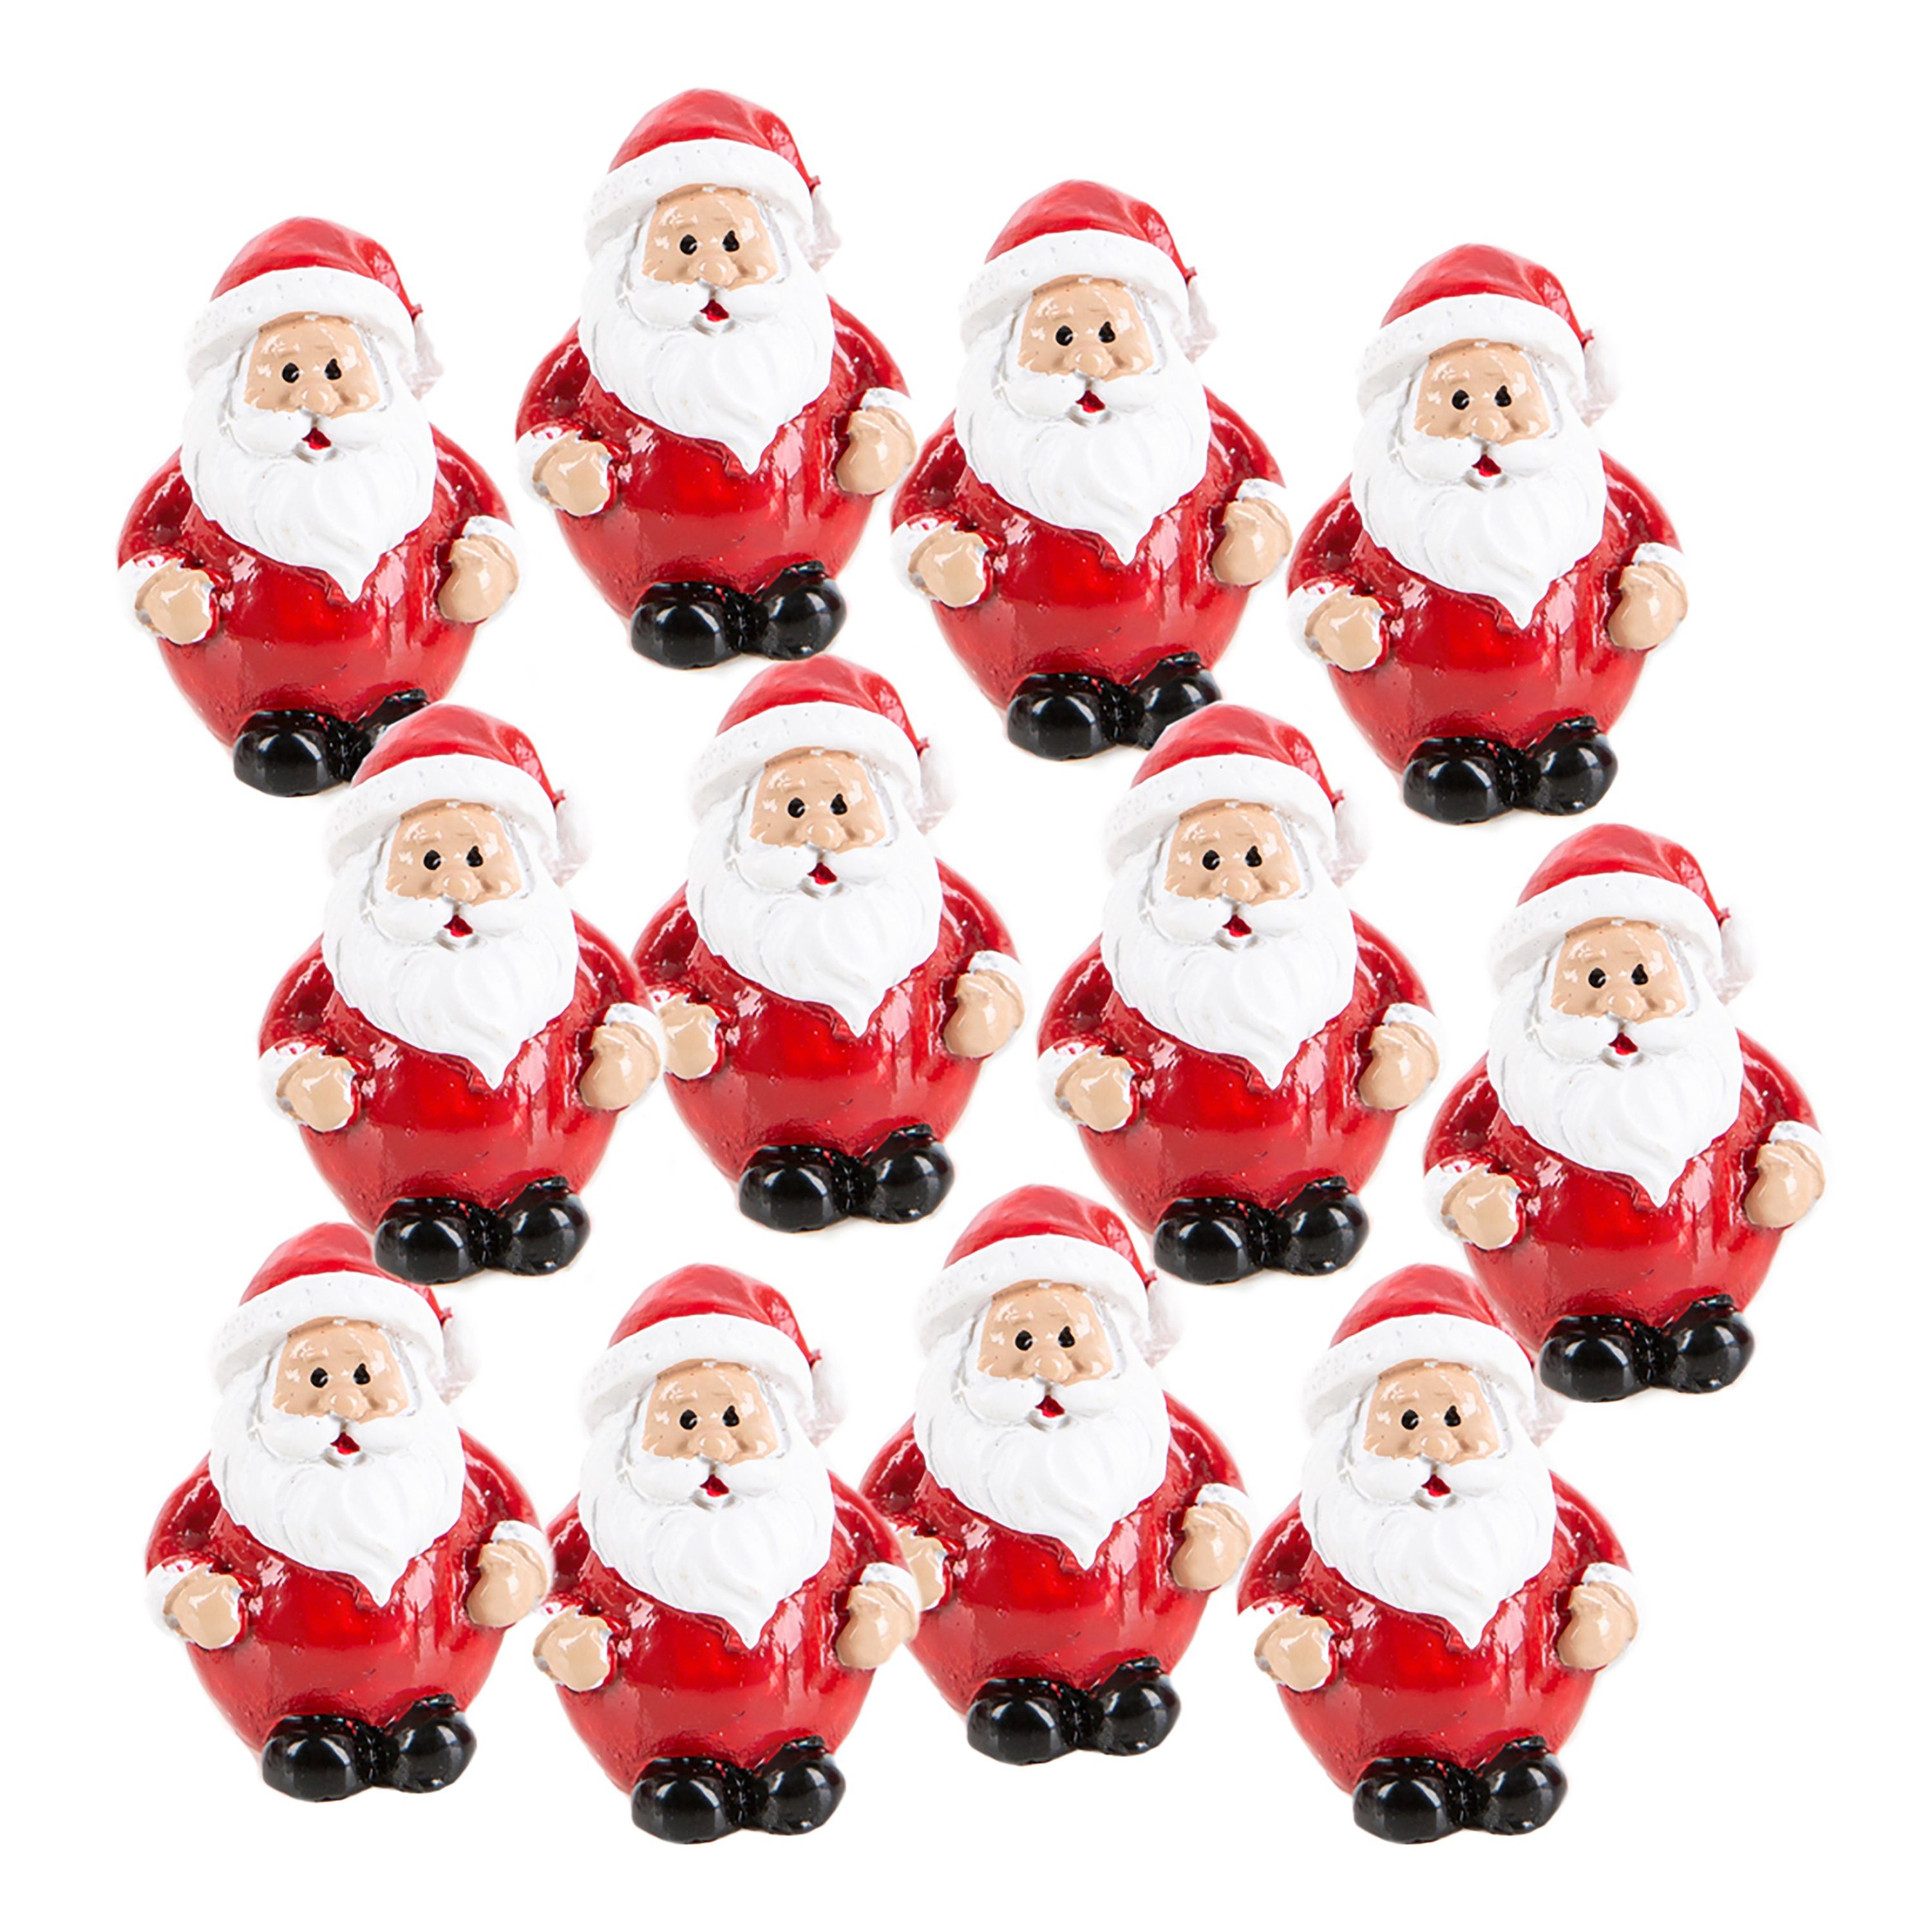 Logbuch-Verlag Weihnachtsfigur 12 kleine Nikolaus Figuren mini Weihnachtsmann rot 3 cm (Set, 12 St), Miniatur Santa Claus Weihnachtsgeschenk